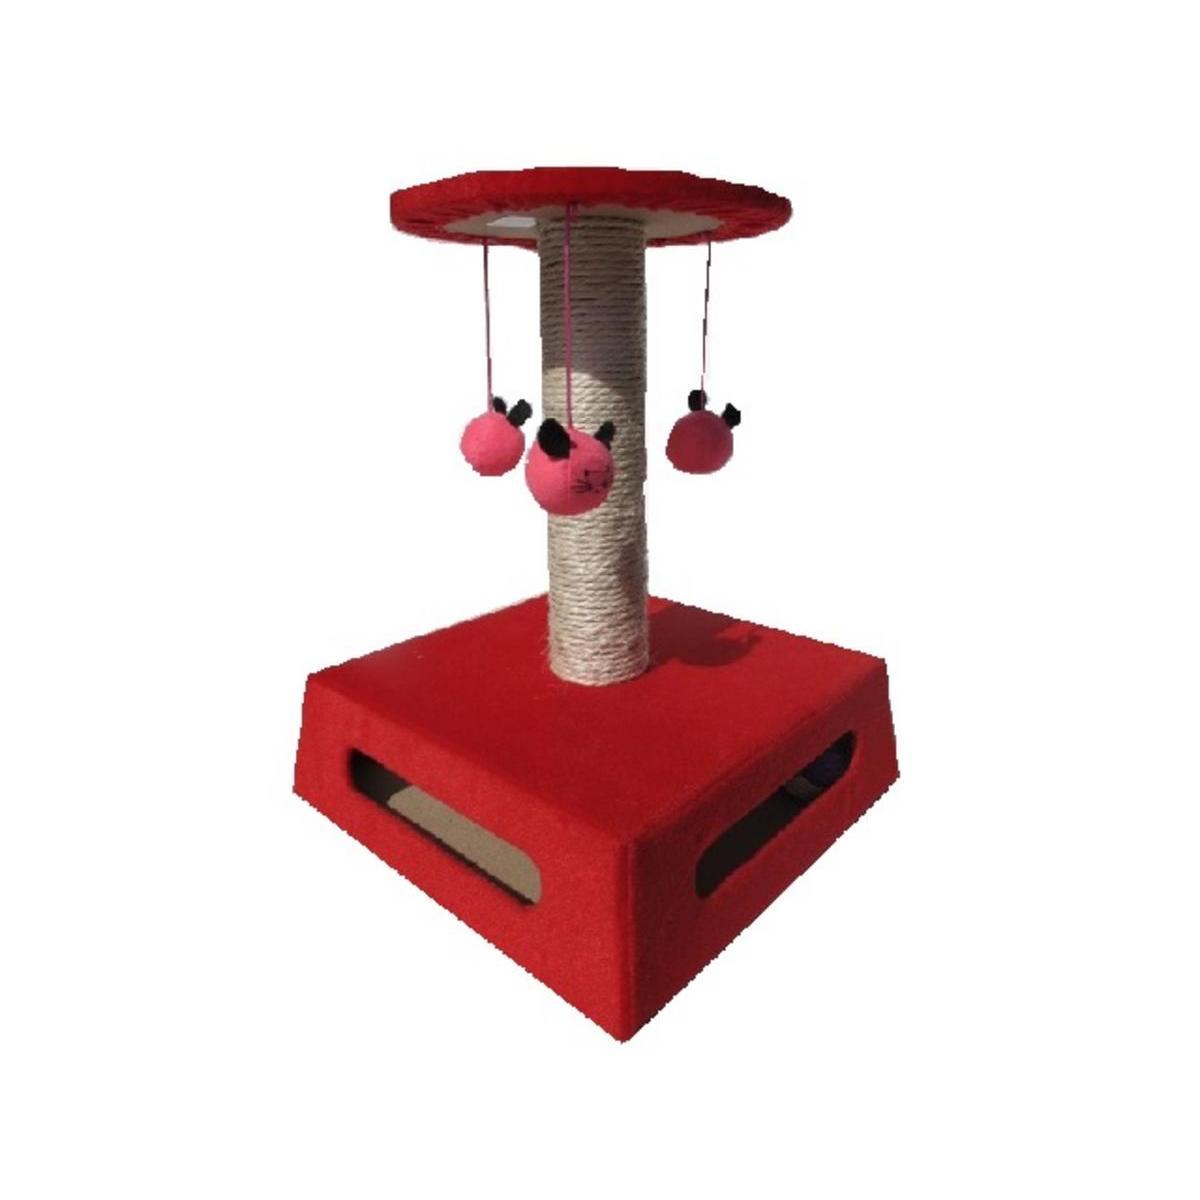 Arbre à chat avec jouets - 34 x 34 x H 41 cm - Textile et bois - Rouge